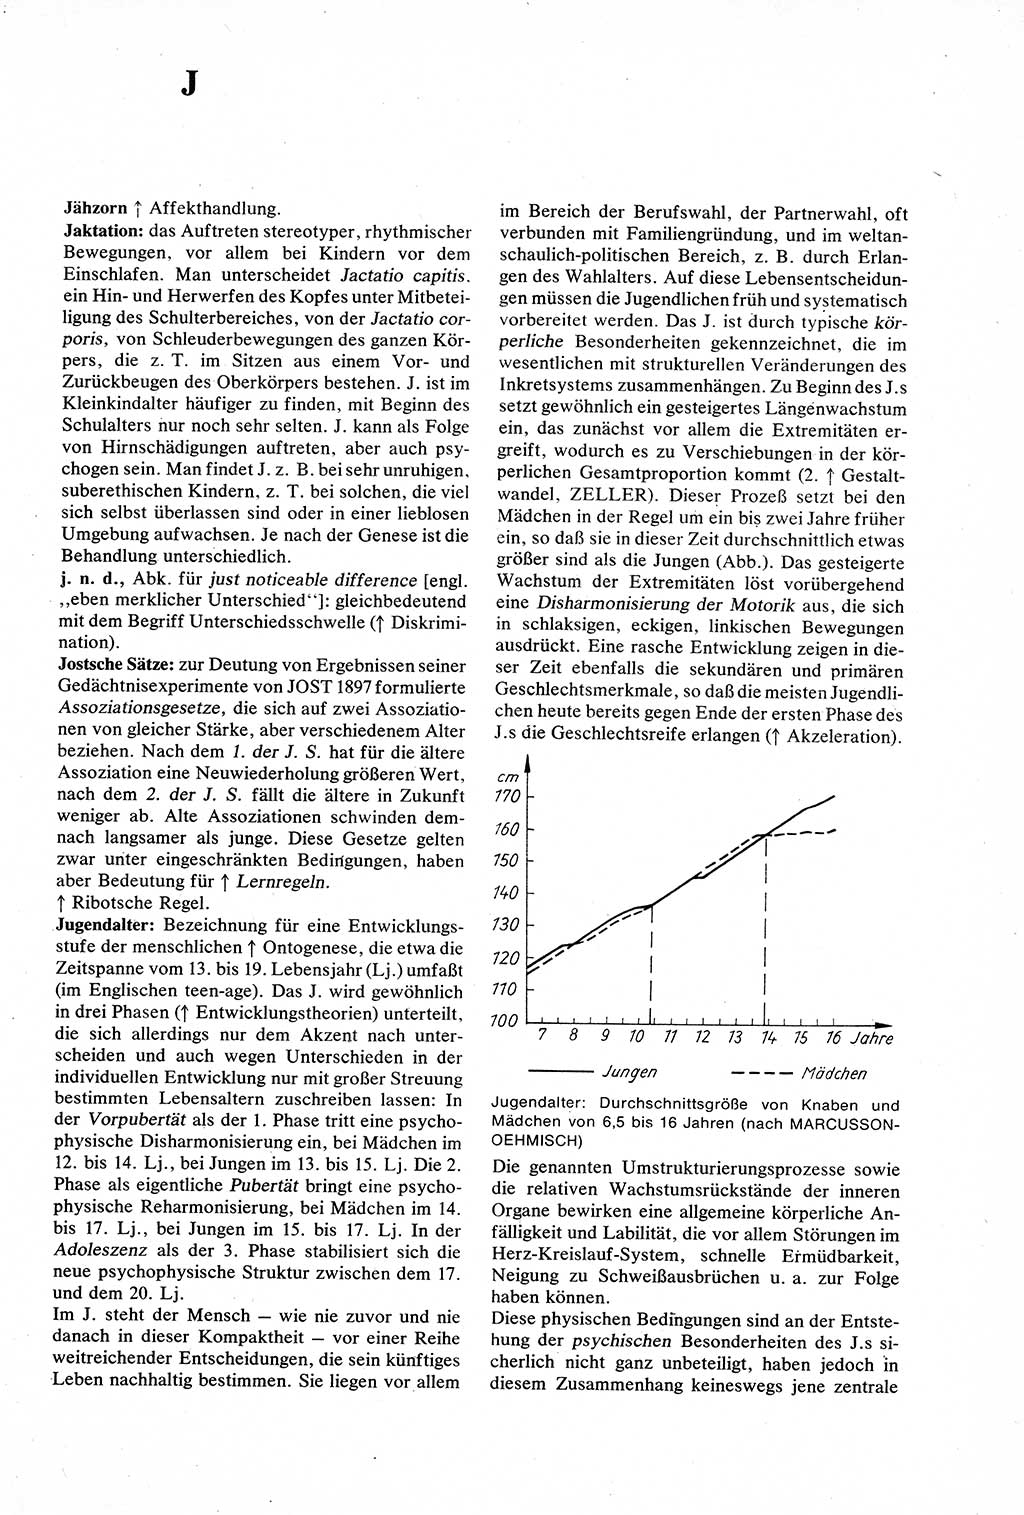 Wörterbuch der Psychologie [Deutsche Demokratische Republik (DDR)] 1976, Seite 265 (Wb. Psych. DDR 1976, S. 265)